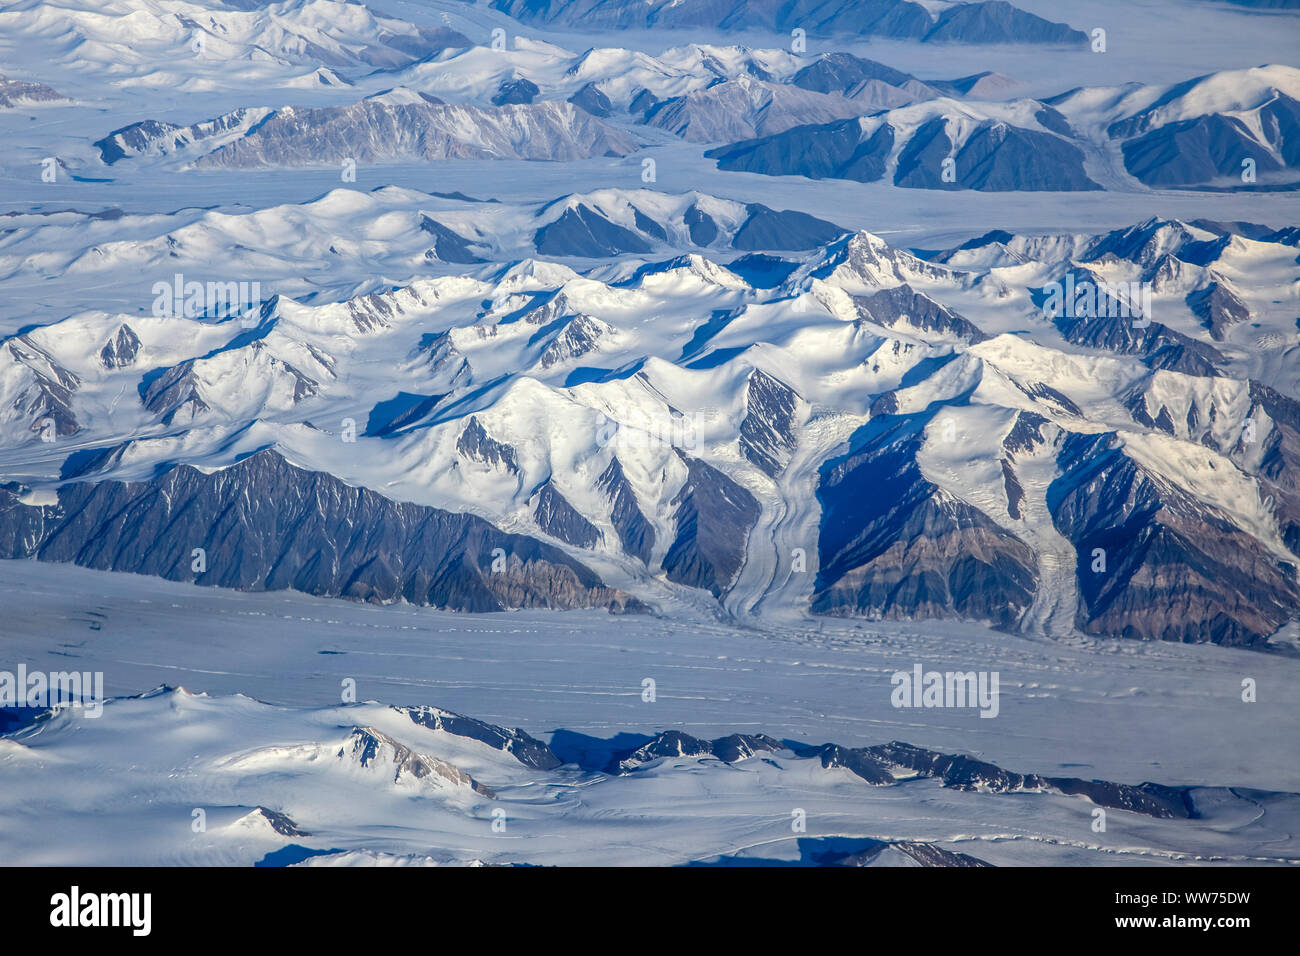 América del Norte, Canadá, Norte de Canadá, Nunavut, isla de Ellesmere, glaciares, montañas, paisajes de hielo Foto de stock